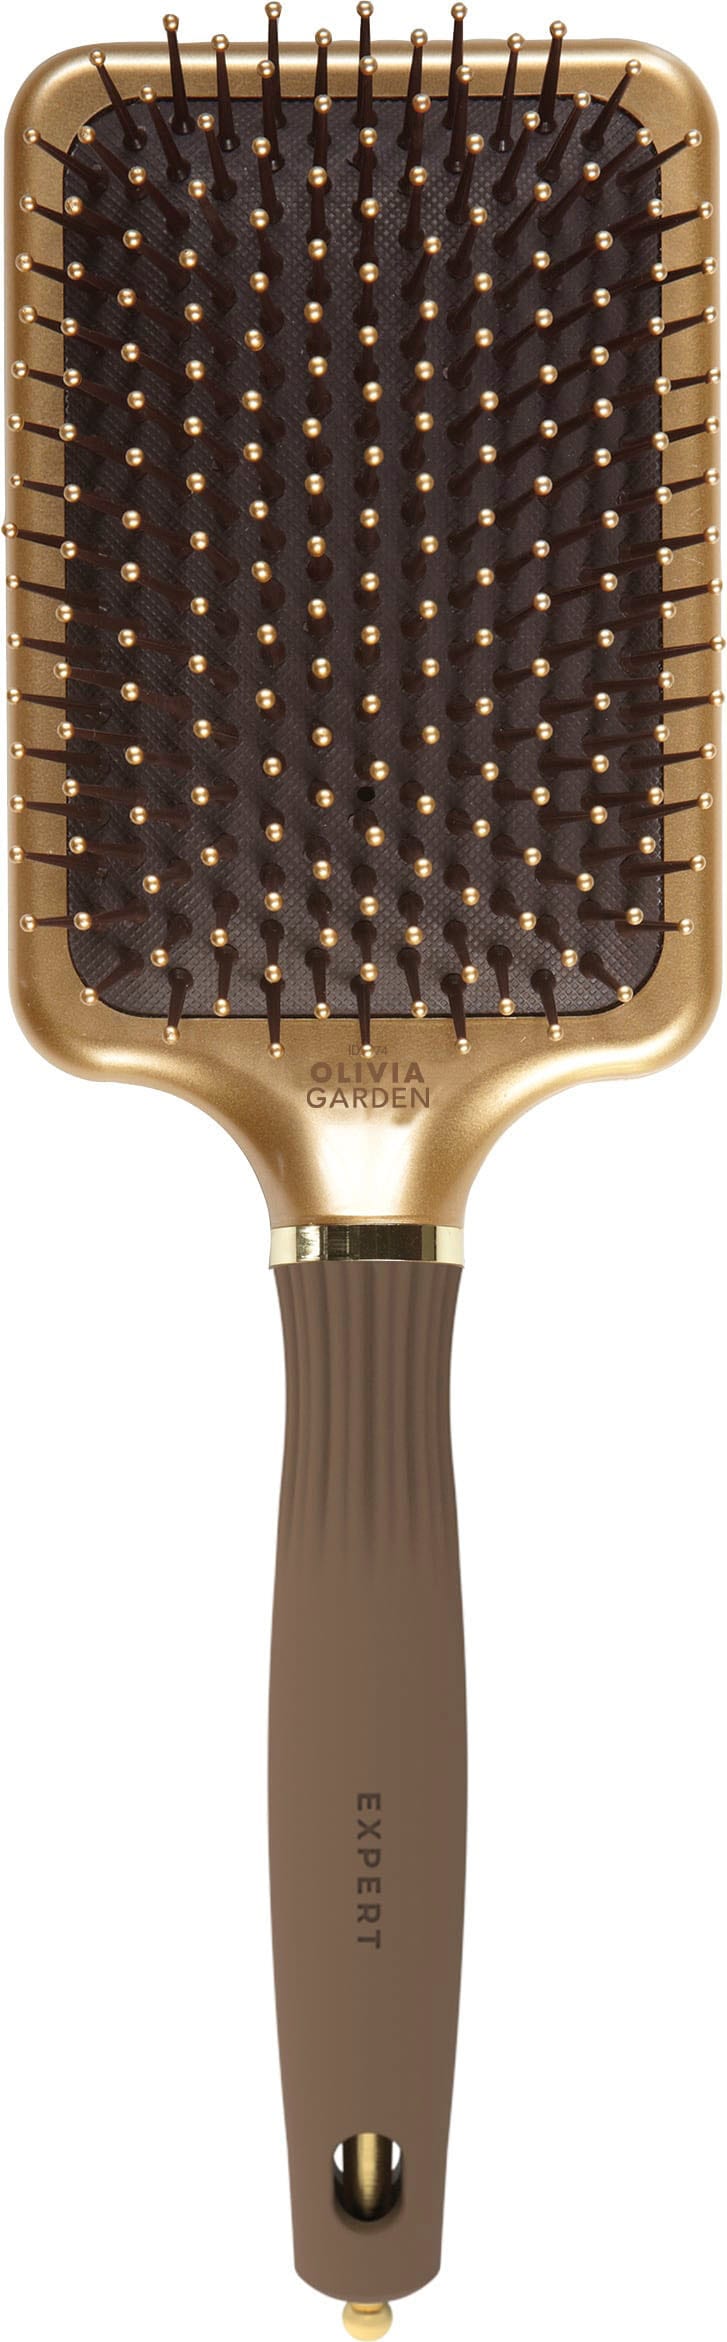 OLIVIA GARDEN Haarbürste »EXPERT CARE RECTANGULAR Nylon Bristle Gold&Brown  L« kaufen